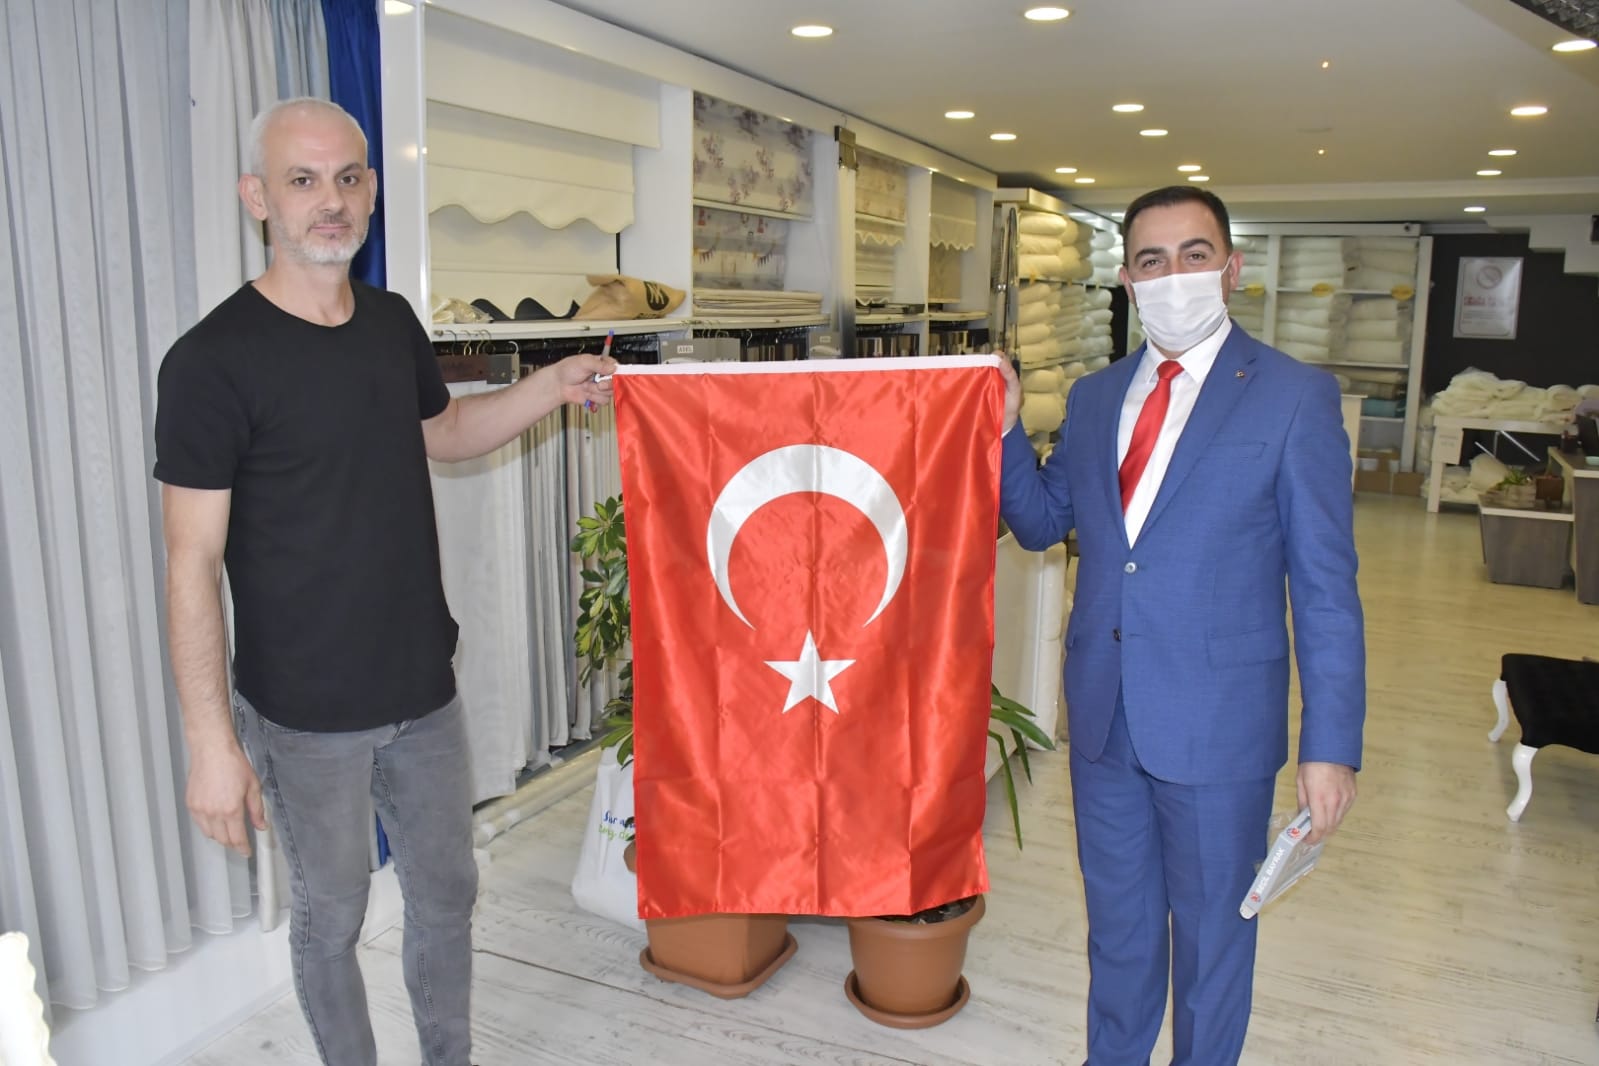 Biga Belediye Başkanı Bülent Erdoğan, 29 Ekim Cumhuriyet Bayramı dolayısıyla esnaf ve vatandaşlara Türk bayrağı dağıttı.